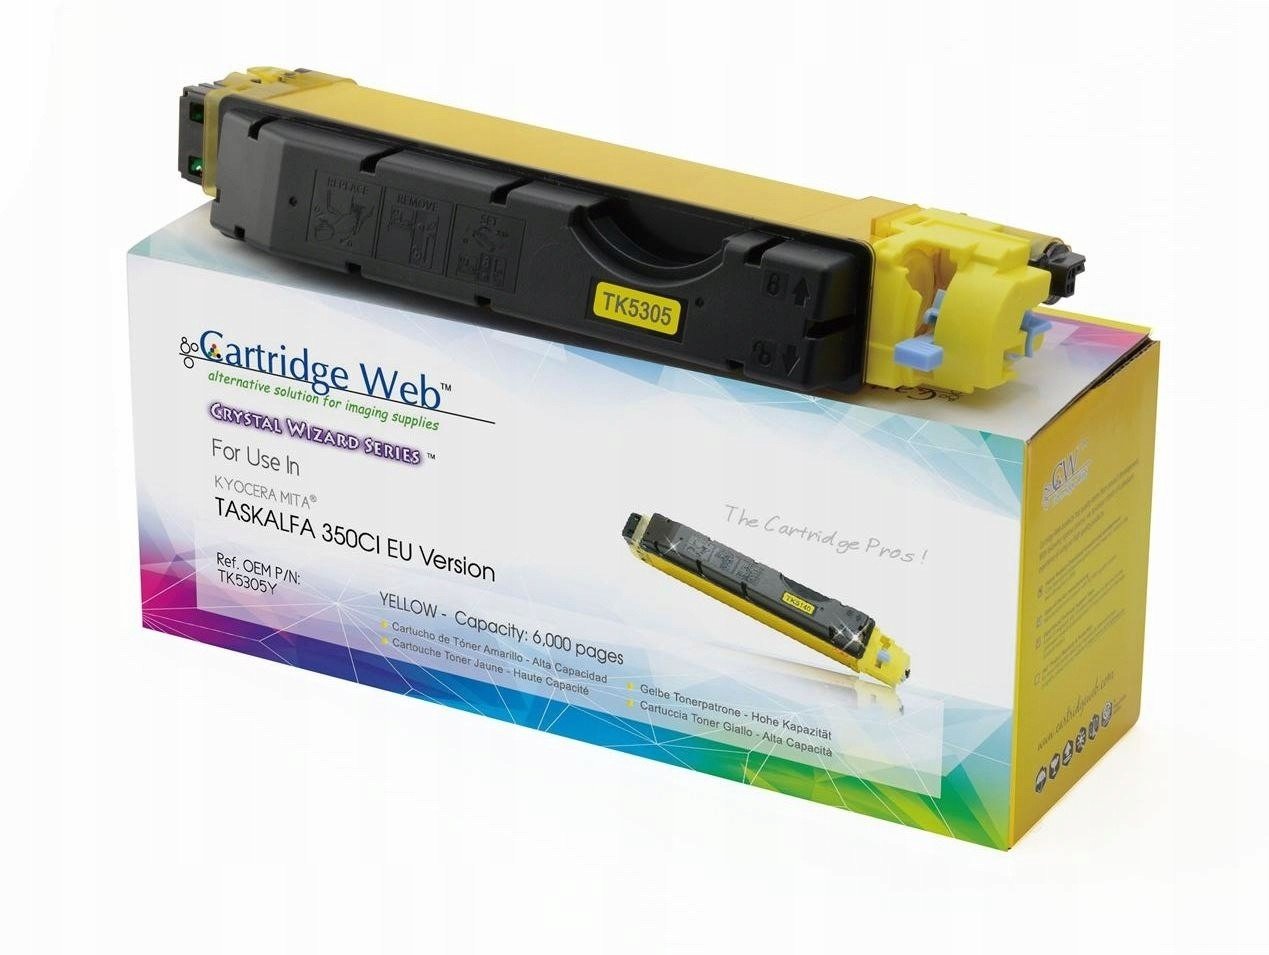 Toner Cartridge Web Yellow Kyocera TK5305 zaměnitelný